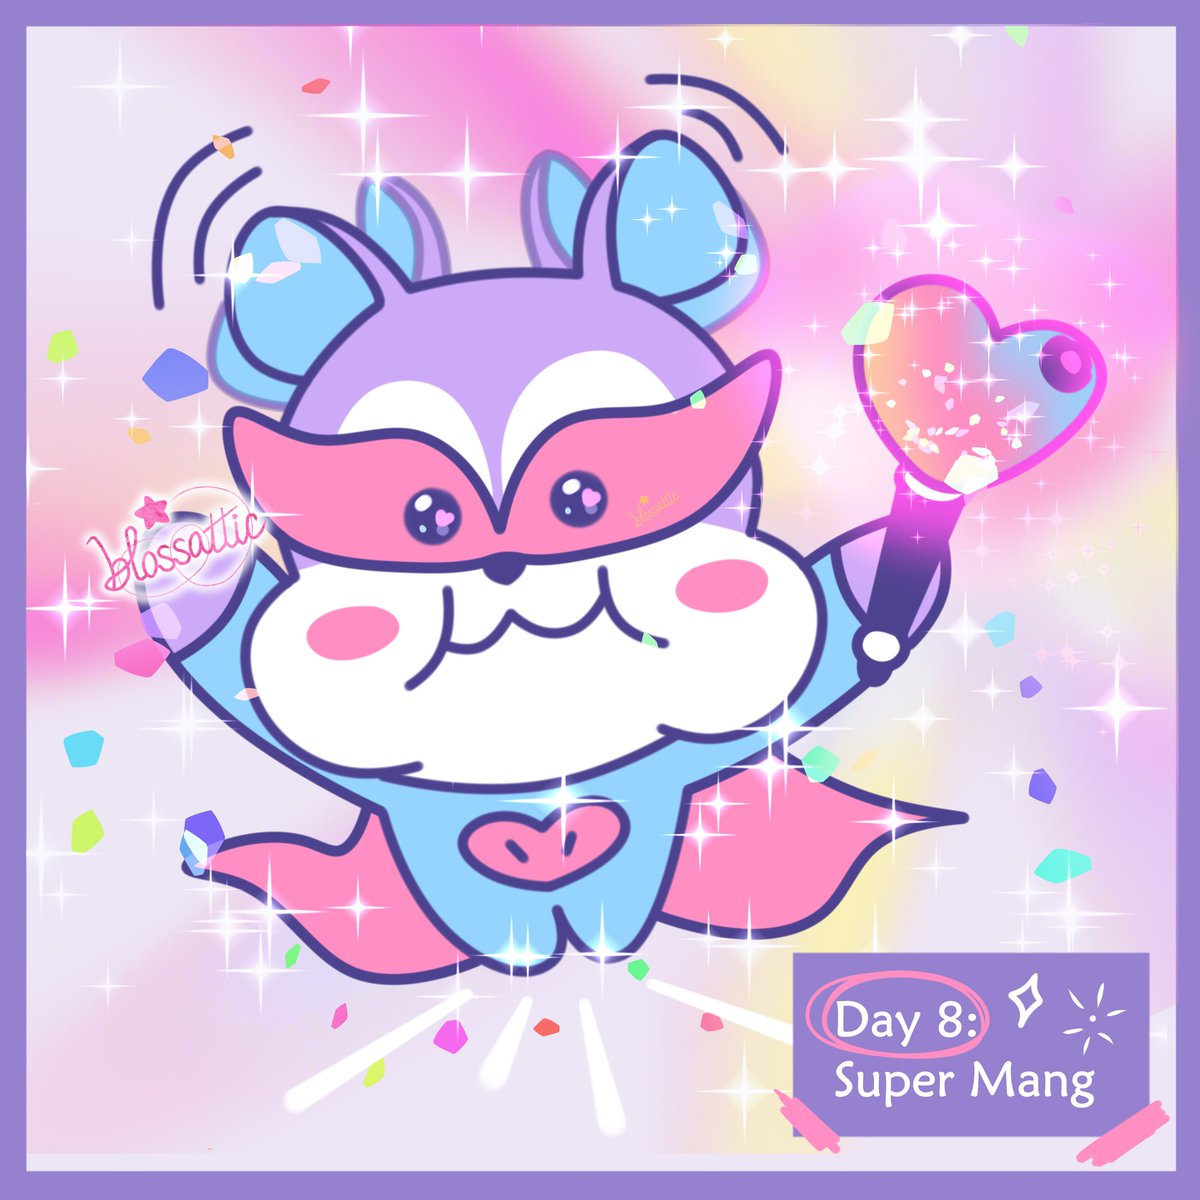 ✨ MANG and the Magic Wand ✨
Day 8: Mang turns into a Super Hero! 🌟
. . .
#MANGTOBER2023 #MANG #BT21MANG